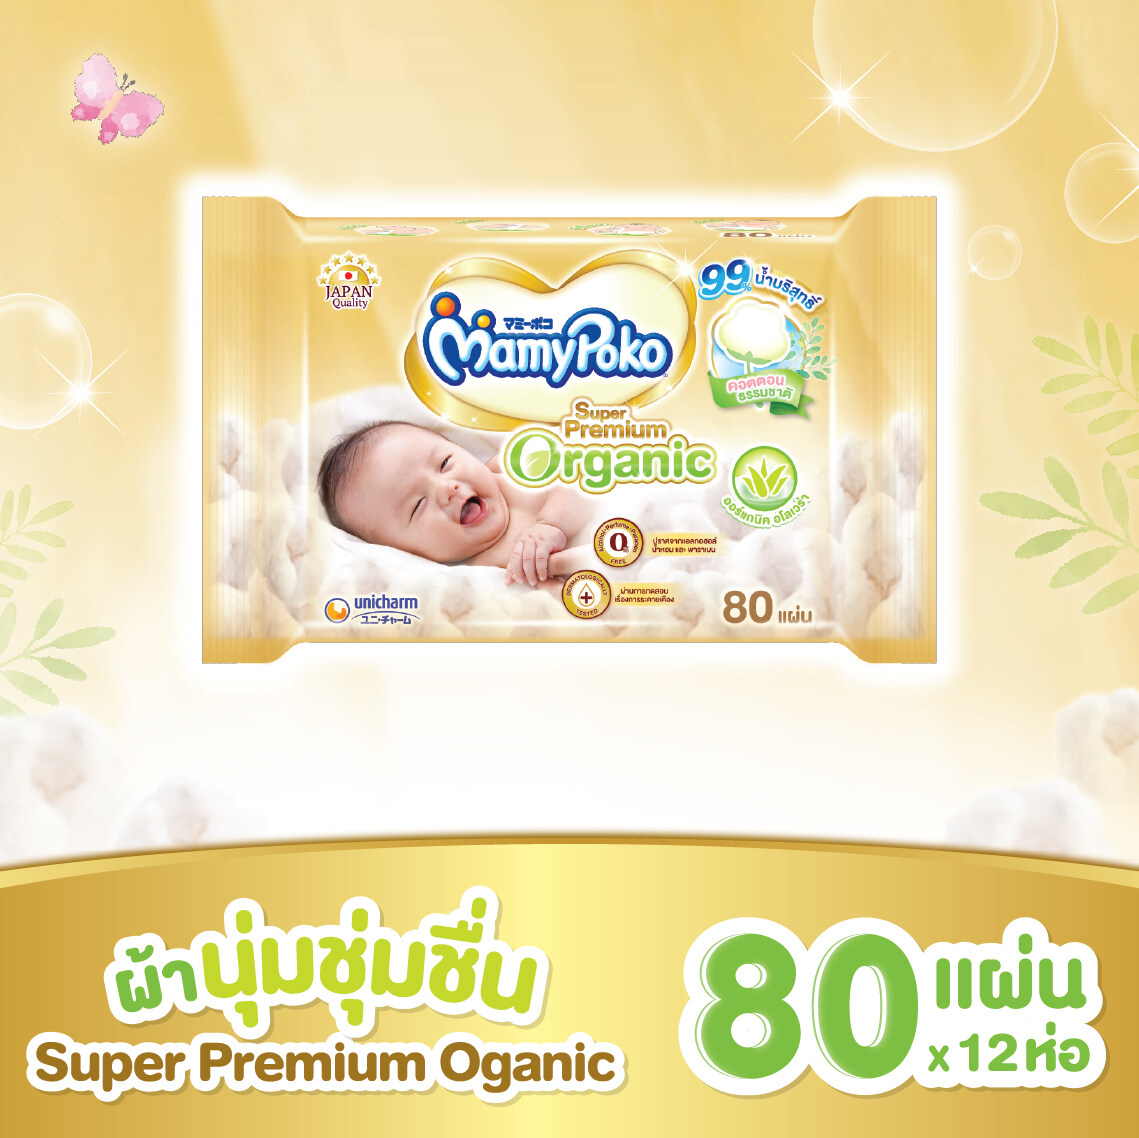 ขายยกลัง !!! MamyPoko Wipes มามี่โพโค ไวพส์ ซูปเปอร์ พรีเมี่ยม ออร์แกนิค ขนาด 80 ชิ้น จำนวน 12 แพ็ค (Super Premium Organic, Baby Wipes)